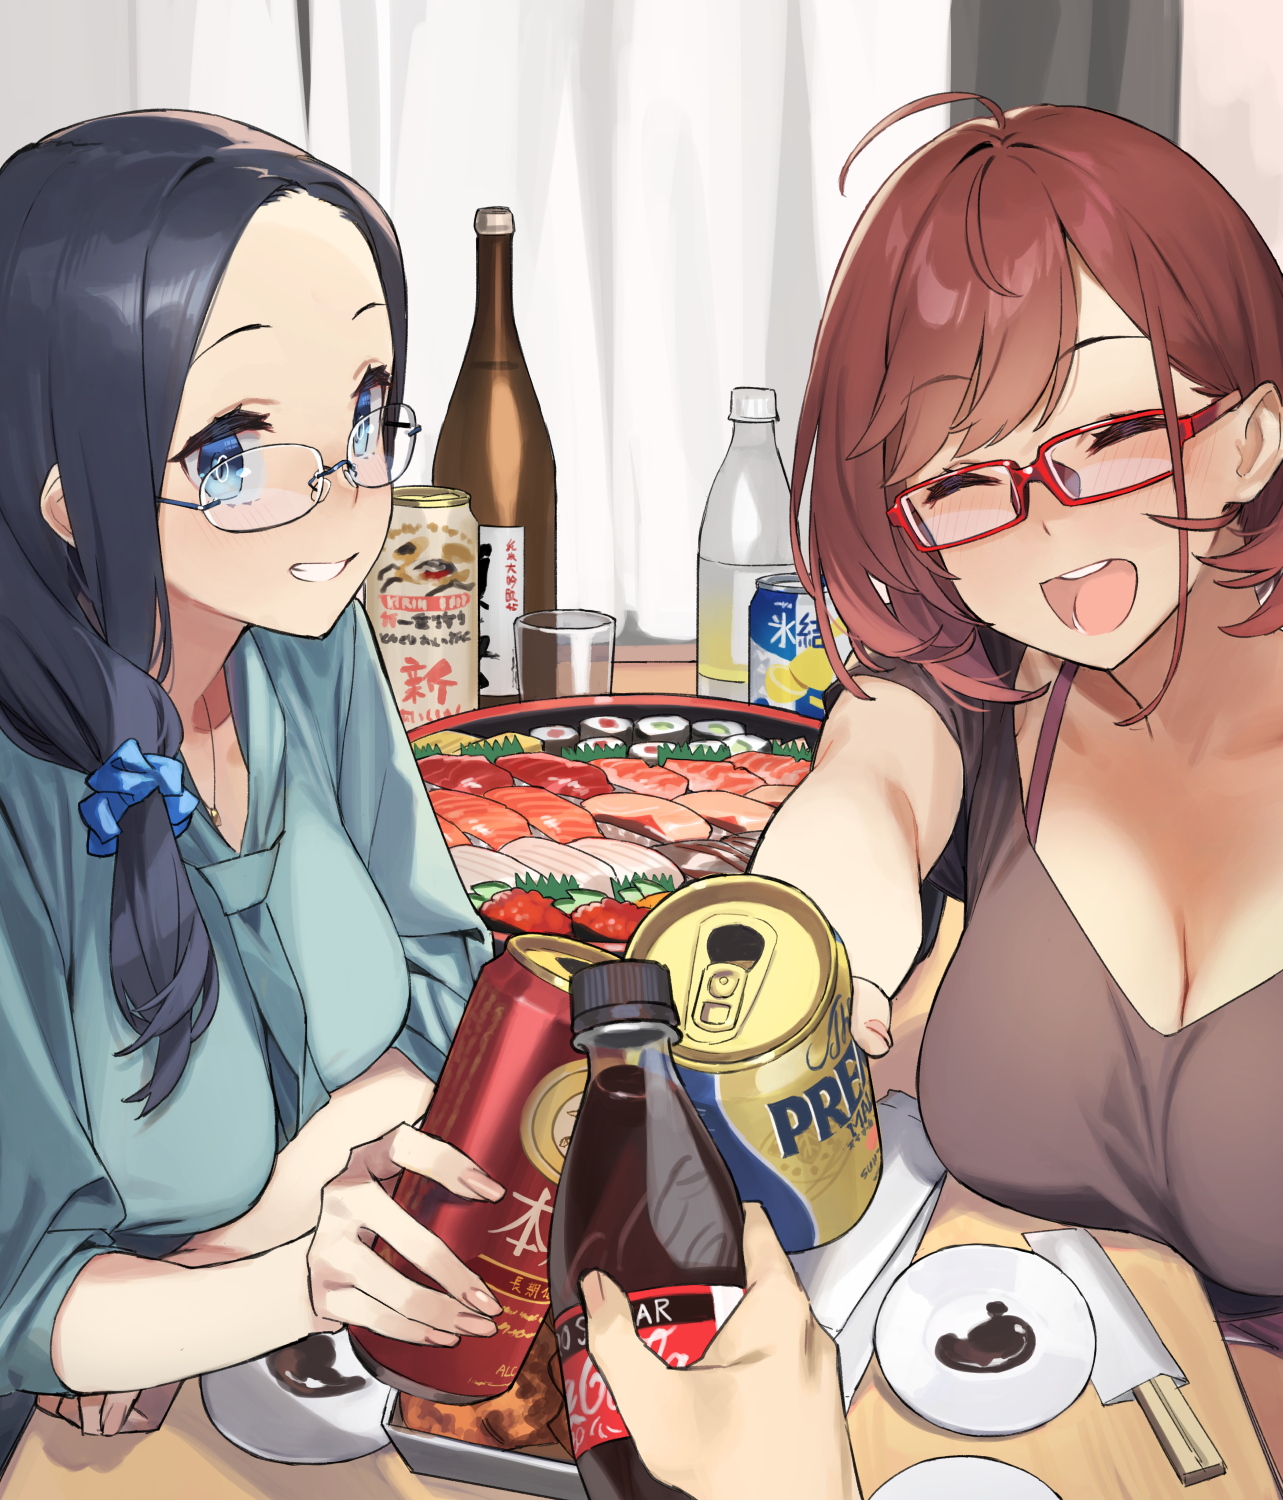 Anime 1283x1500 anime anime girls artwork miyabi92 dark hair brunette glasses smiling food POV